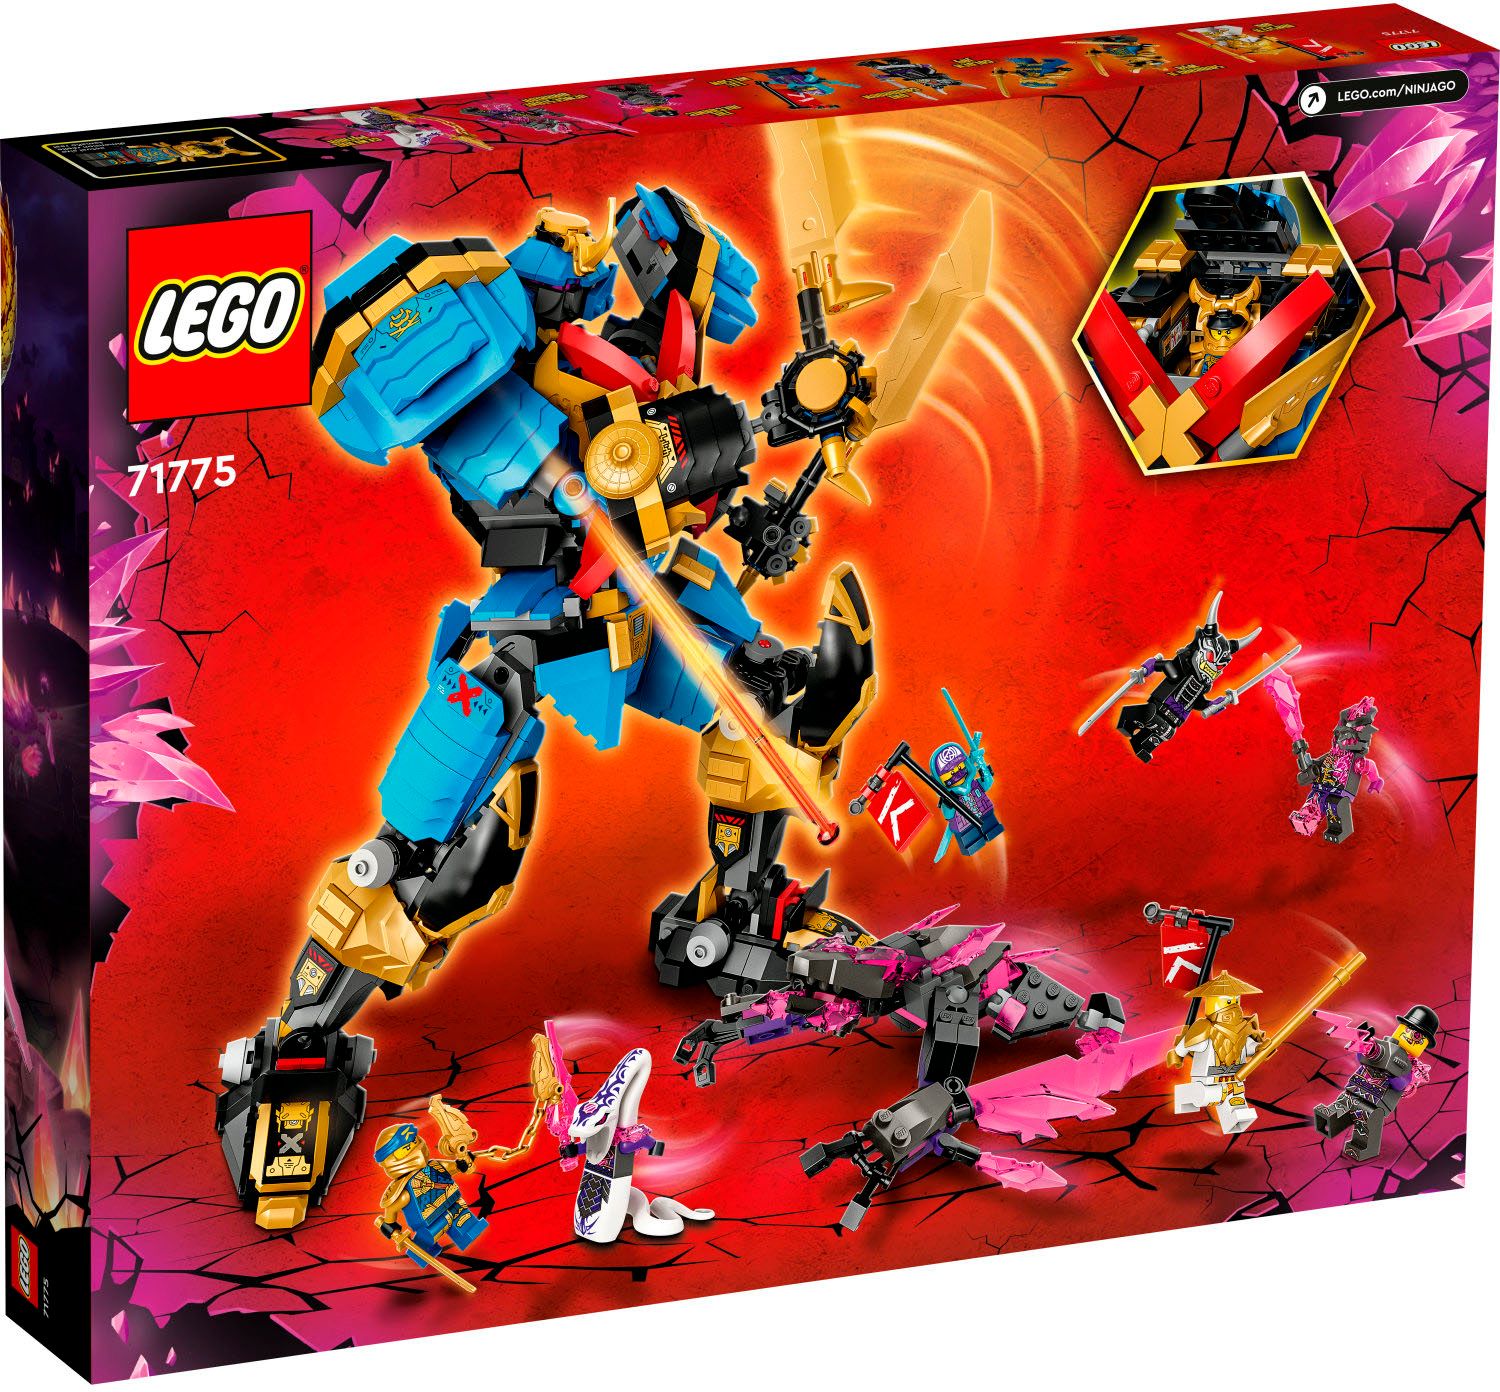 LEGO Nya's Samurai X 71775 6378917 - Best Buy